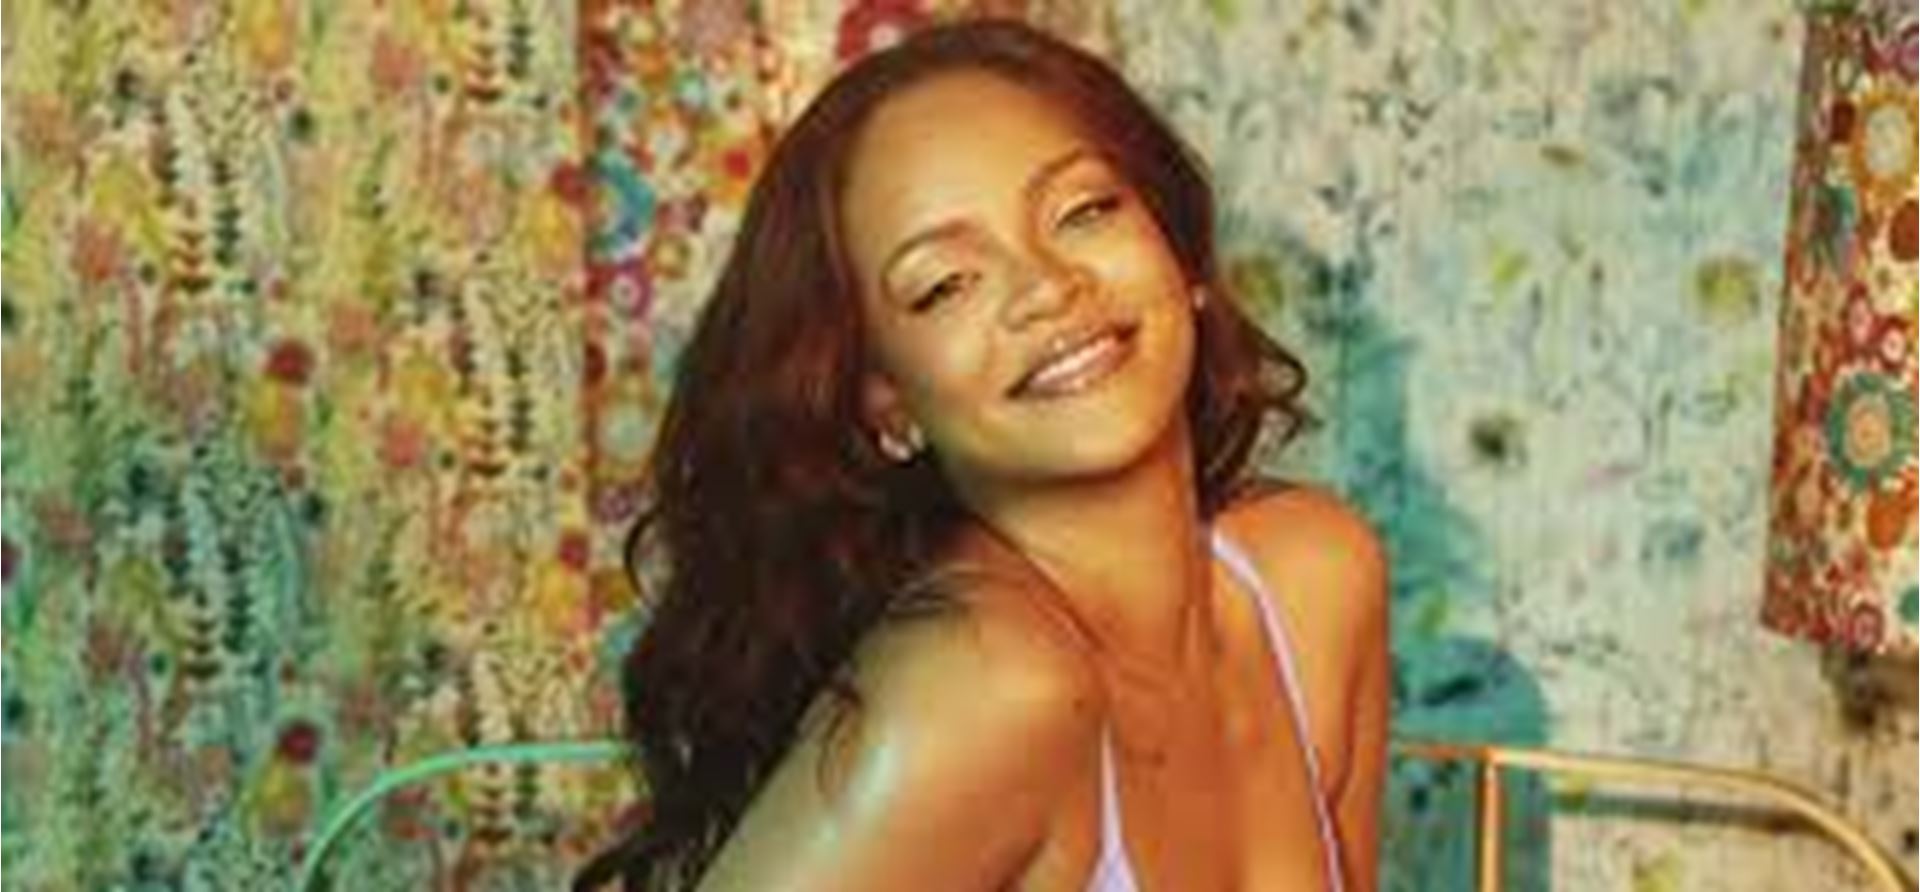 Çıplak poz rihanna 'Kışkırtıcı' Rihanna